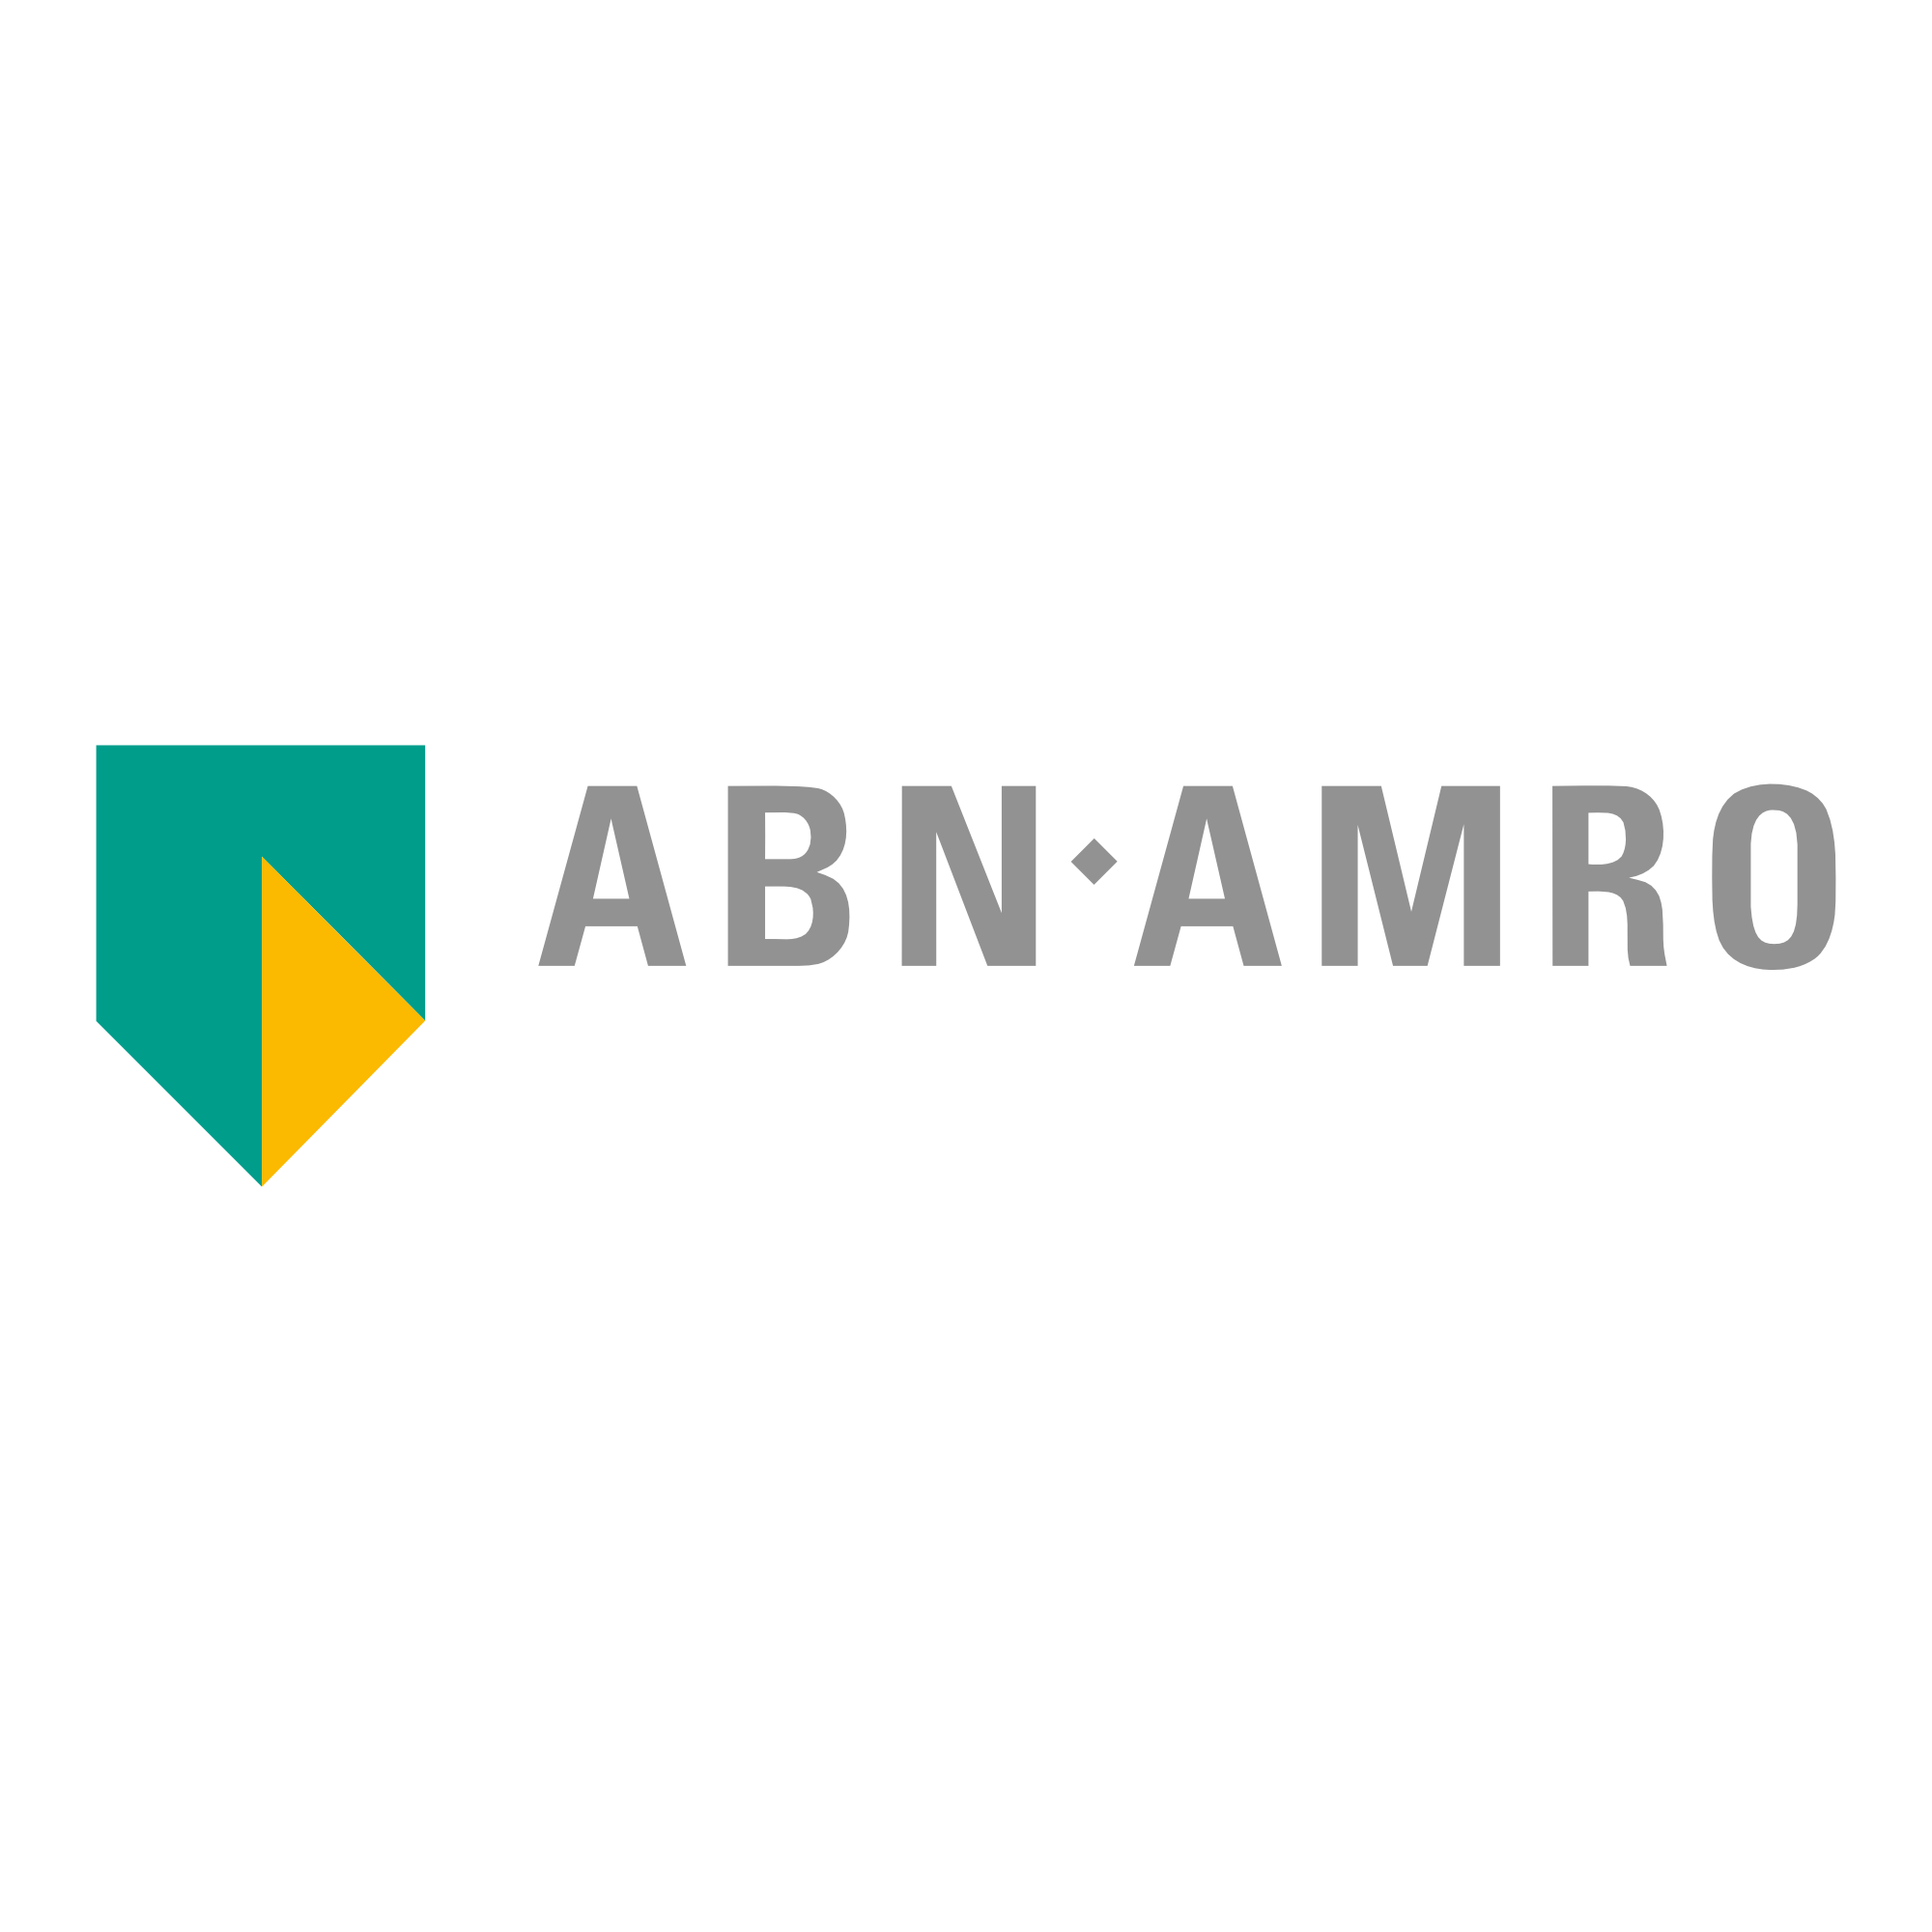 ABN AMRO en UniqueTeams partners | UniqueTeams